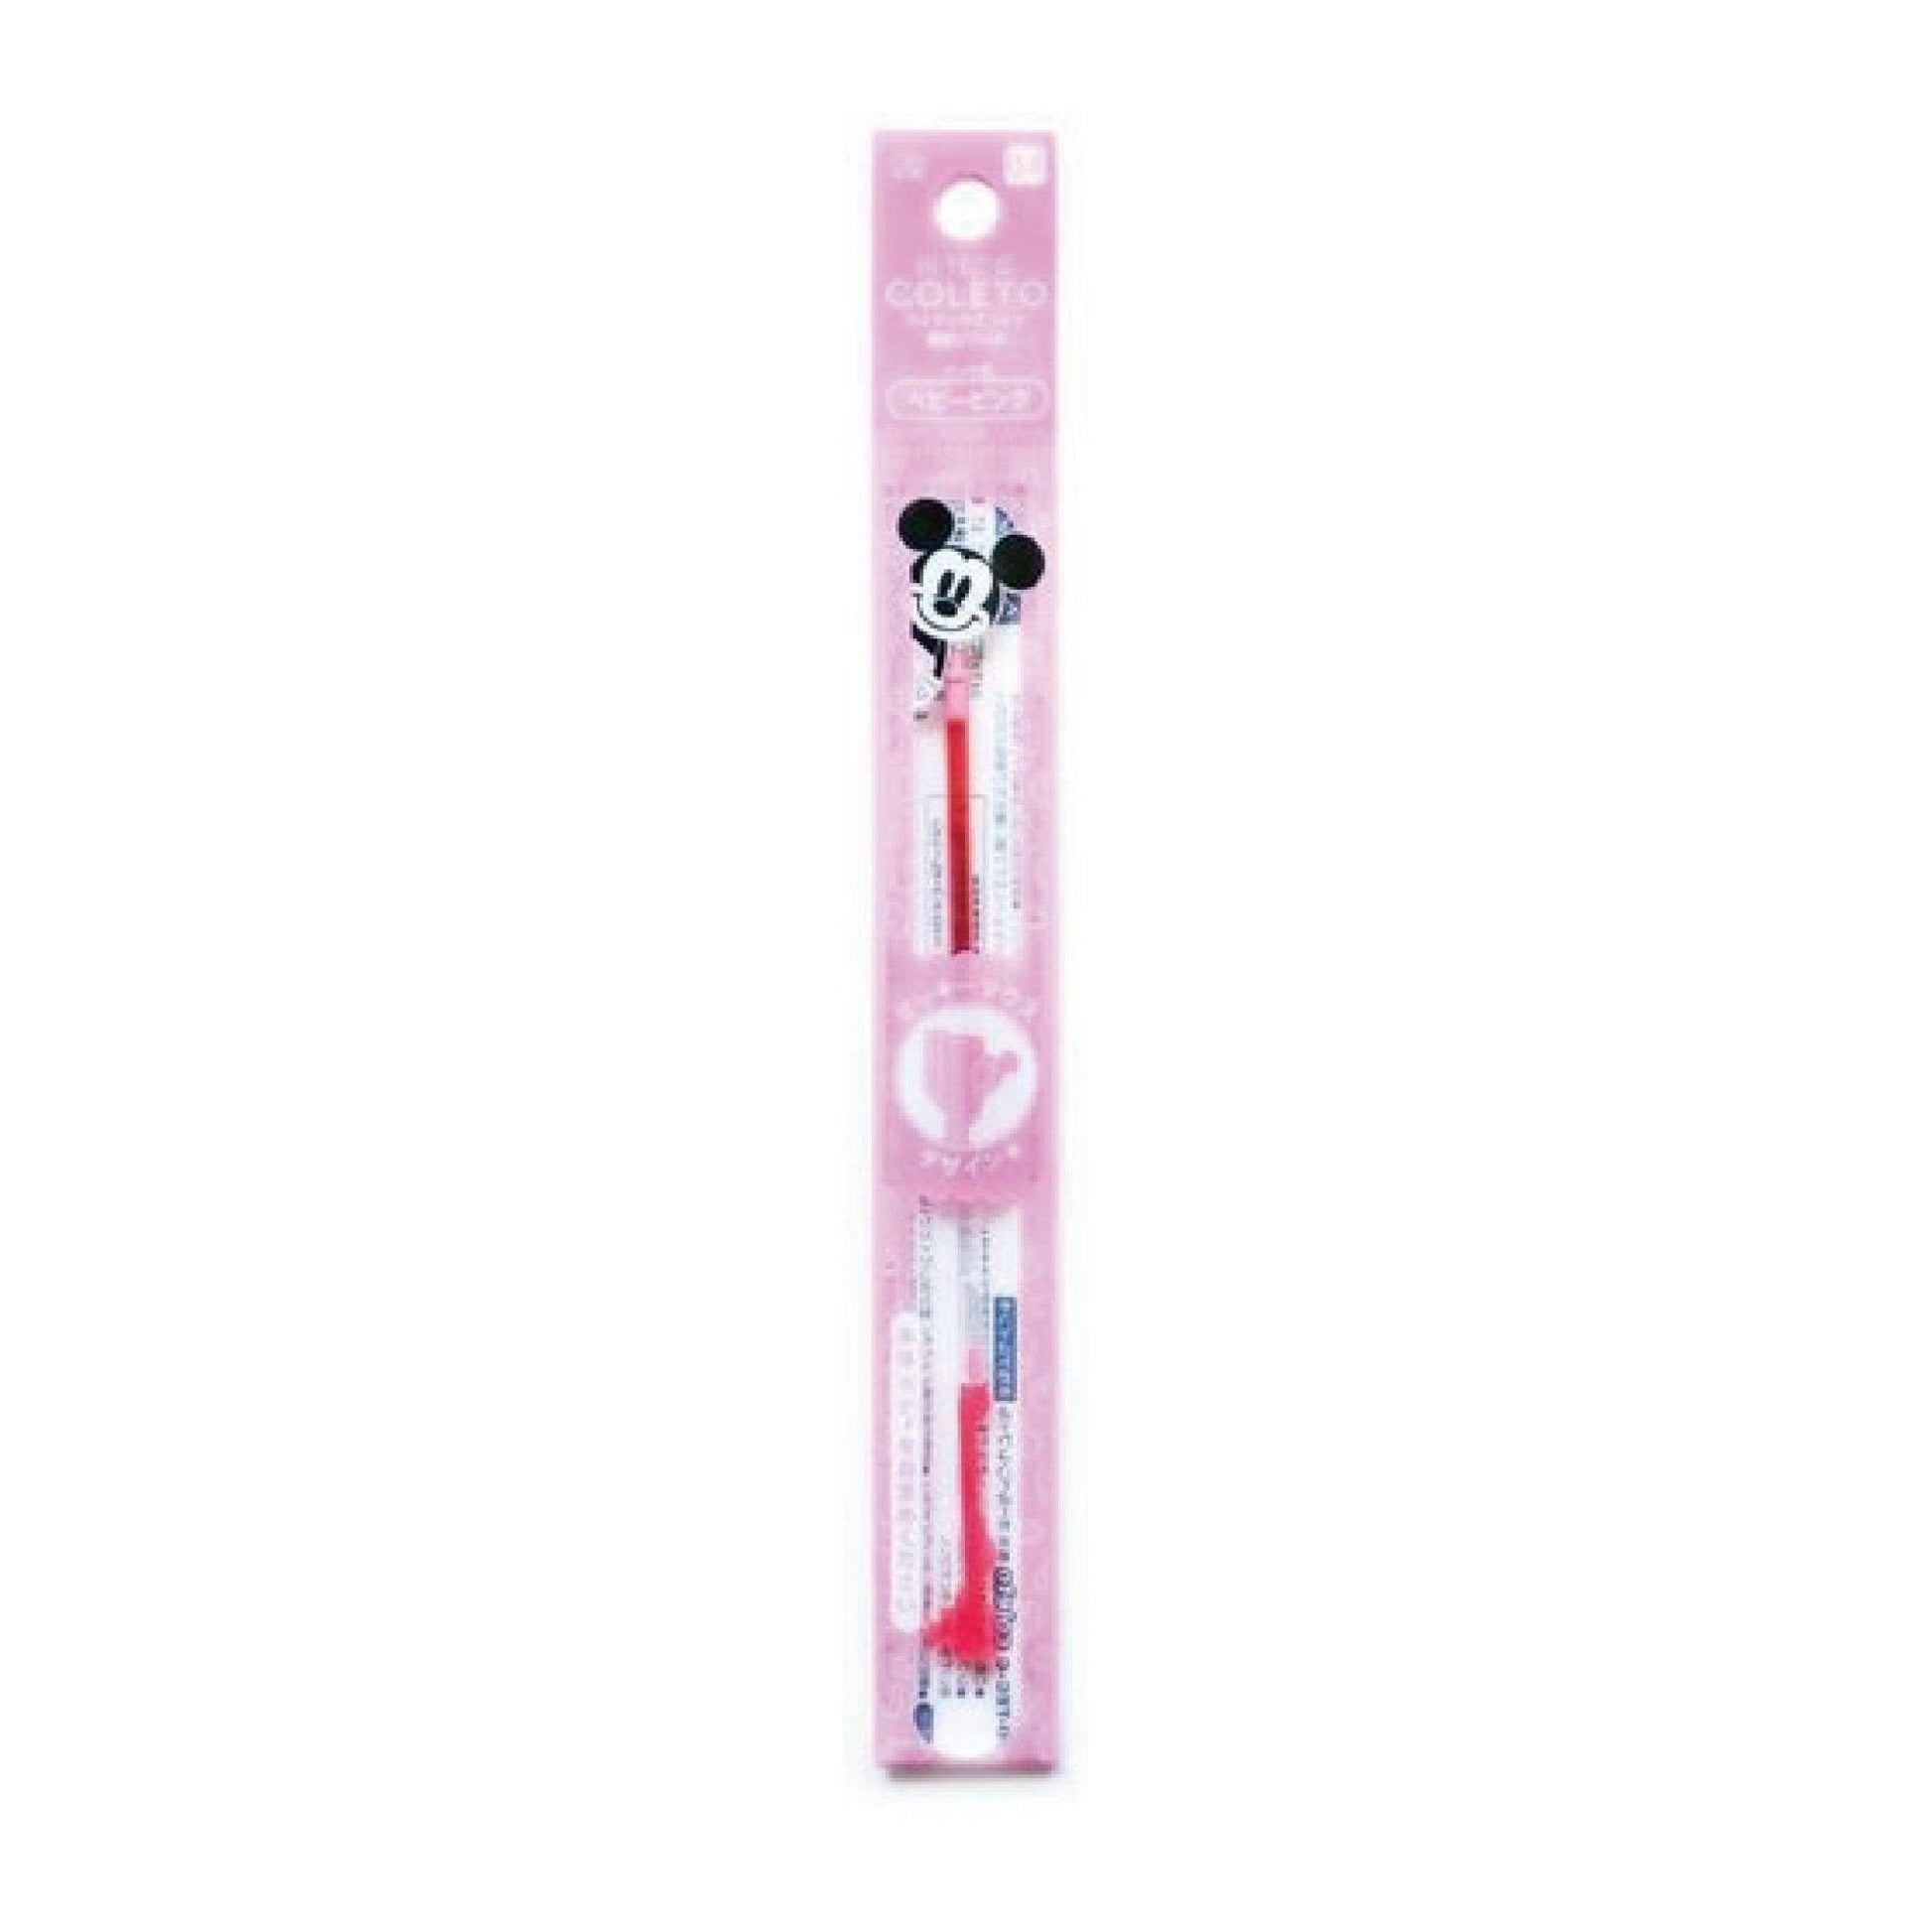 SUN-STAR S4648 HI-TEC-C COLETO Disney Mickey Minnie Four-color Pen Case Pen Body Pen Case Pen Tube Mickey Shape 0.4MM Refill - CHL-STORE 